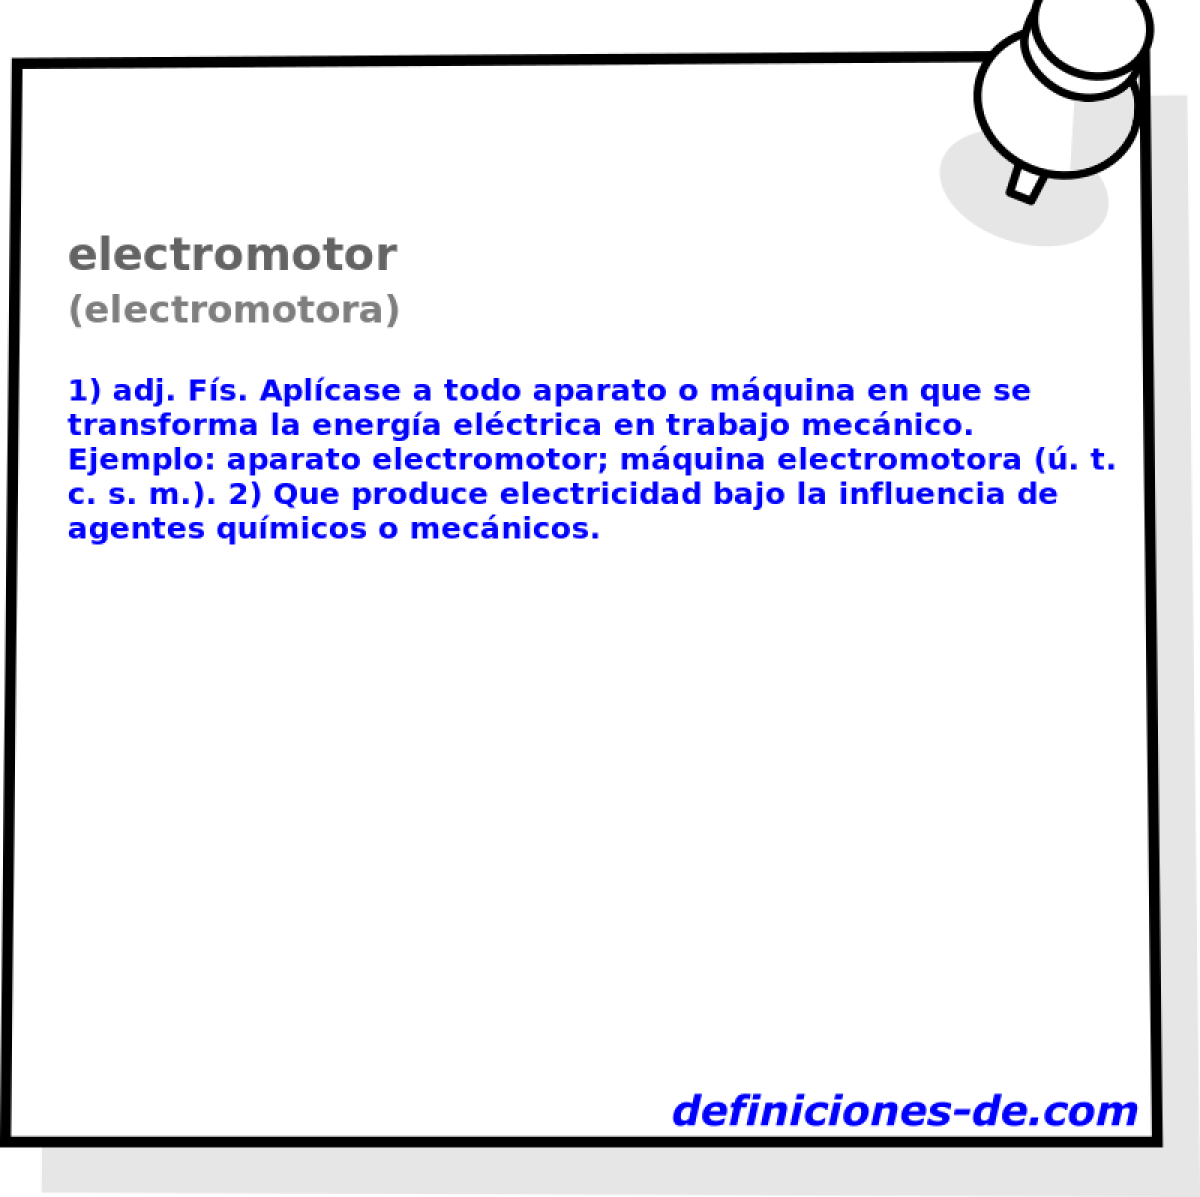 electromotor (electromotora)